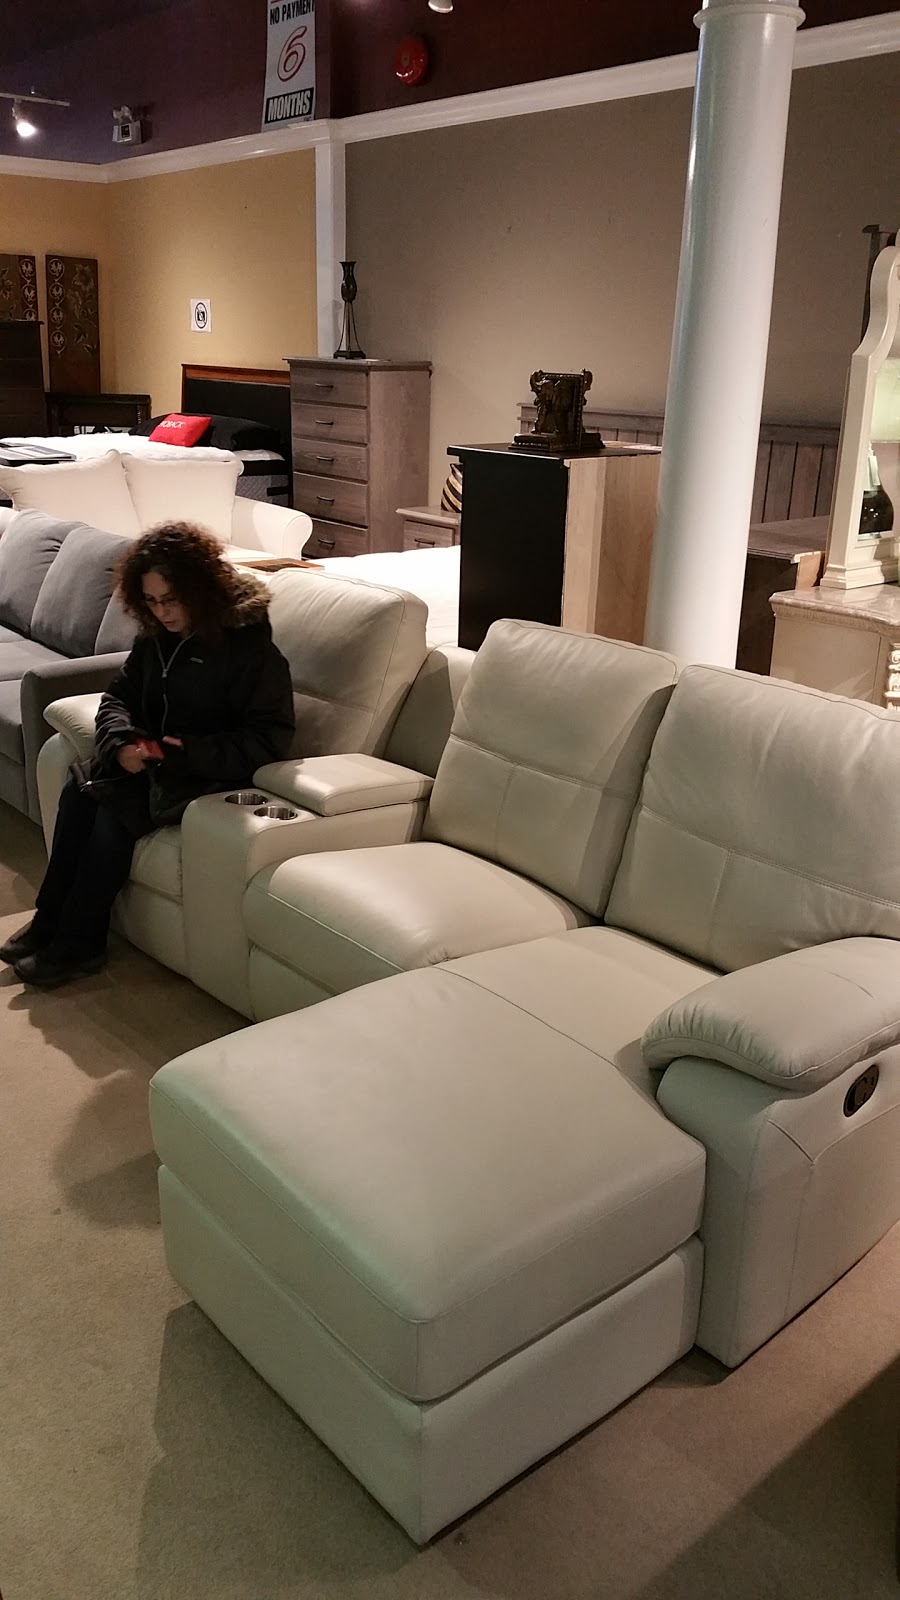 Roma Furniture - Furniture & Mattress Store in Coquitlam | furniture store | 1301 United Blvd, Coquitlam, BC V3K 6V3, Canada | 6045264466 OR +1 604-526-4466